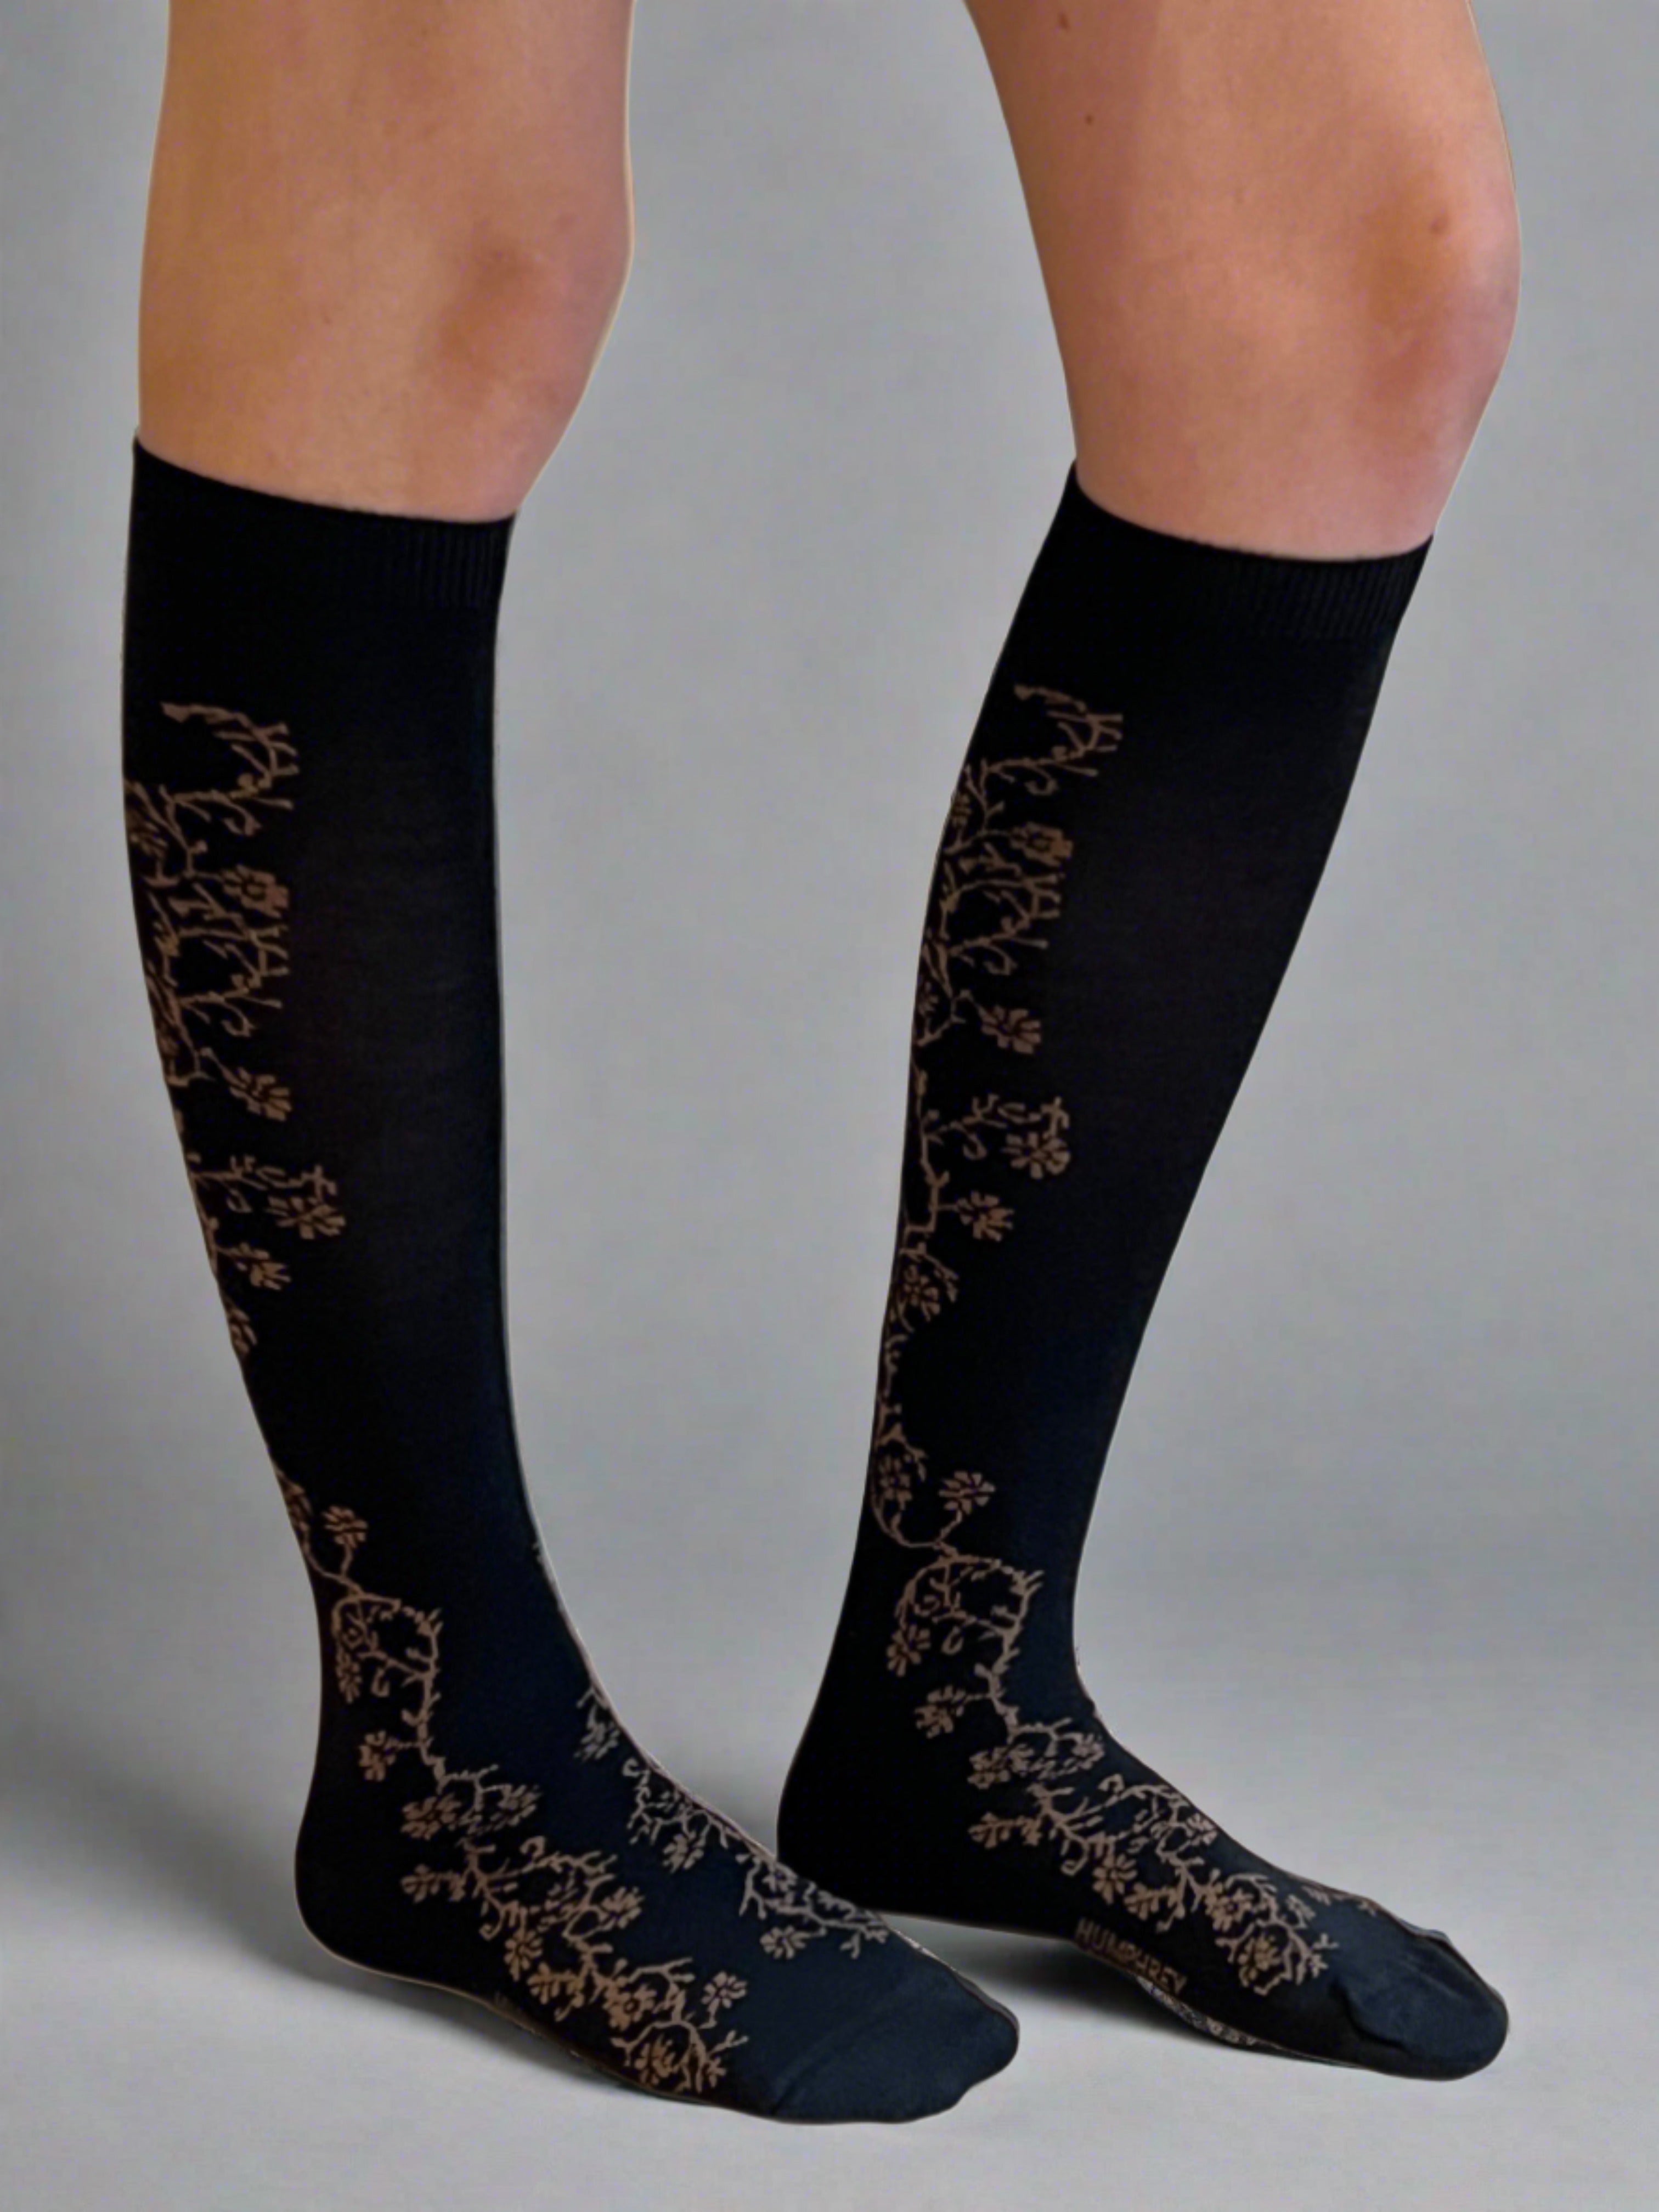 Jasmine Vine Black Merino Wool Women's Knee High Socks - Aussie Made